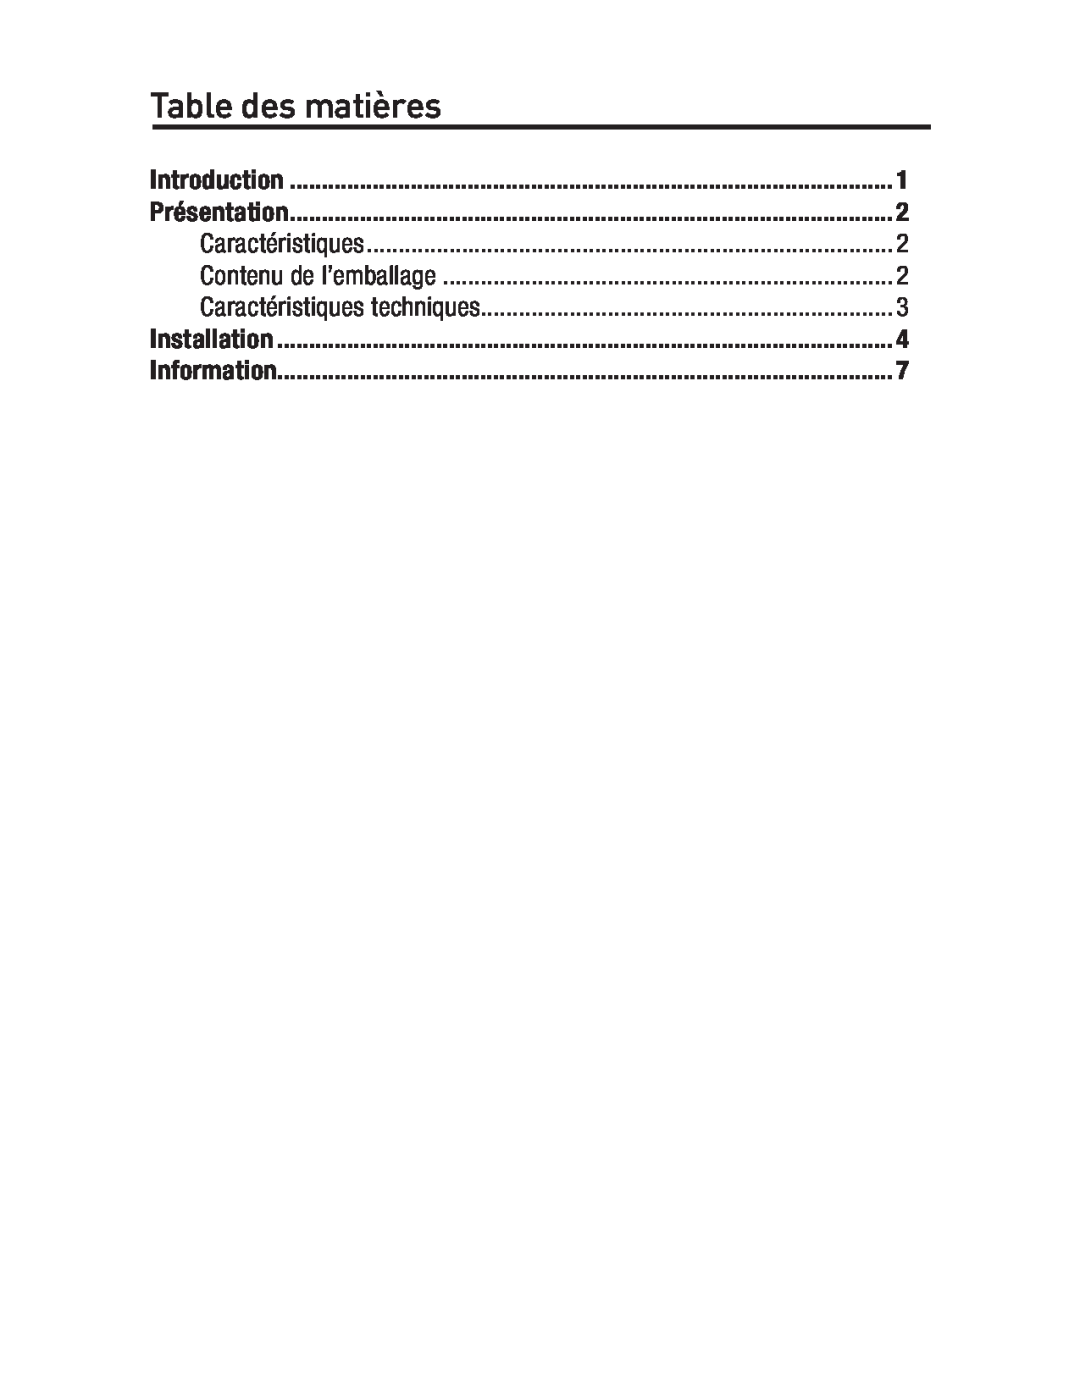 Belkin F5U234 Table des matières, Introduction, Présentation, Caractéristiques, Contenu de l’emballage, Installation 